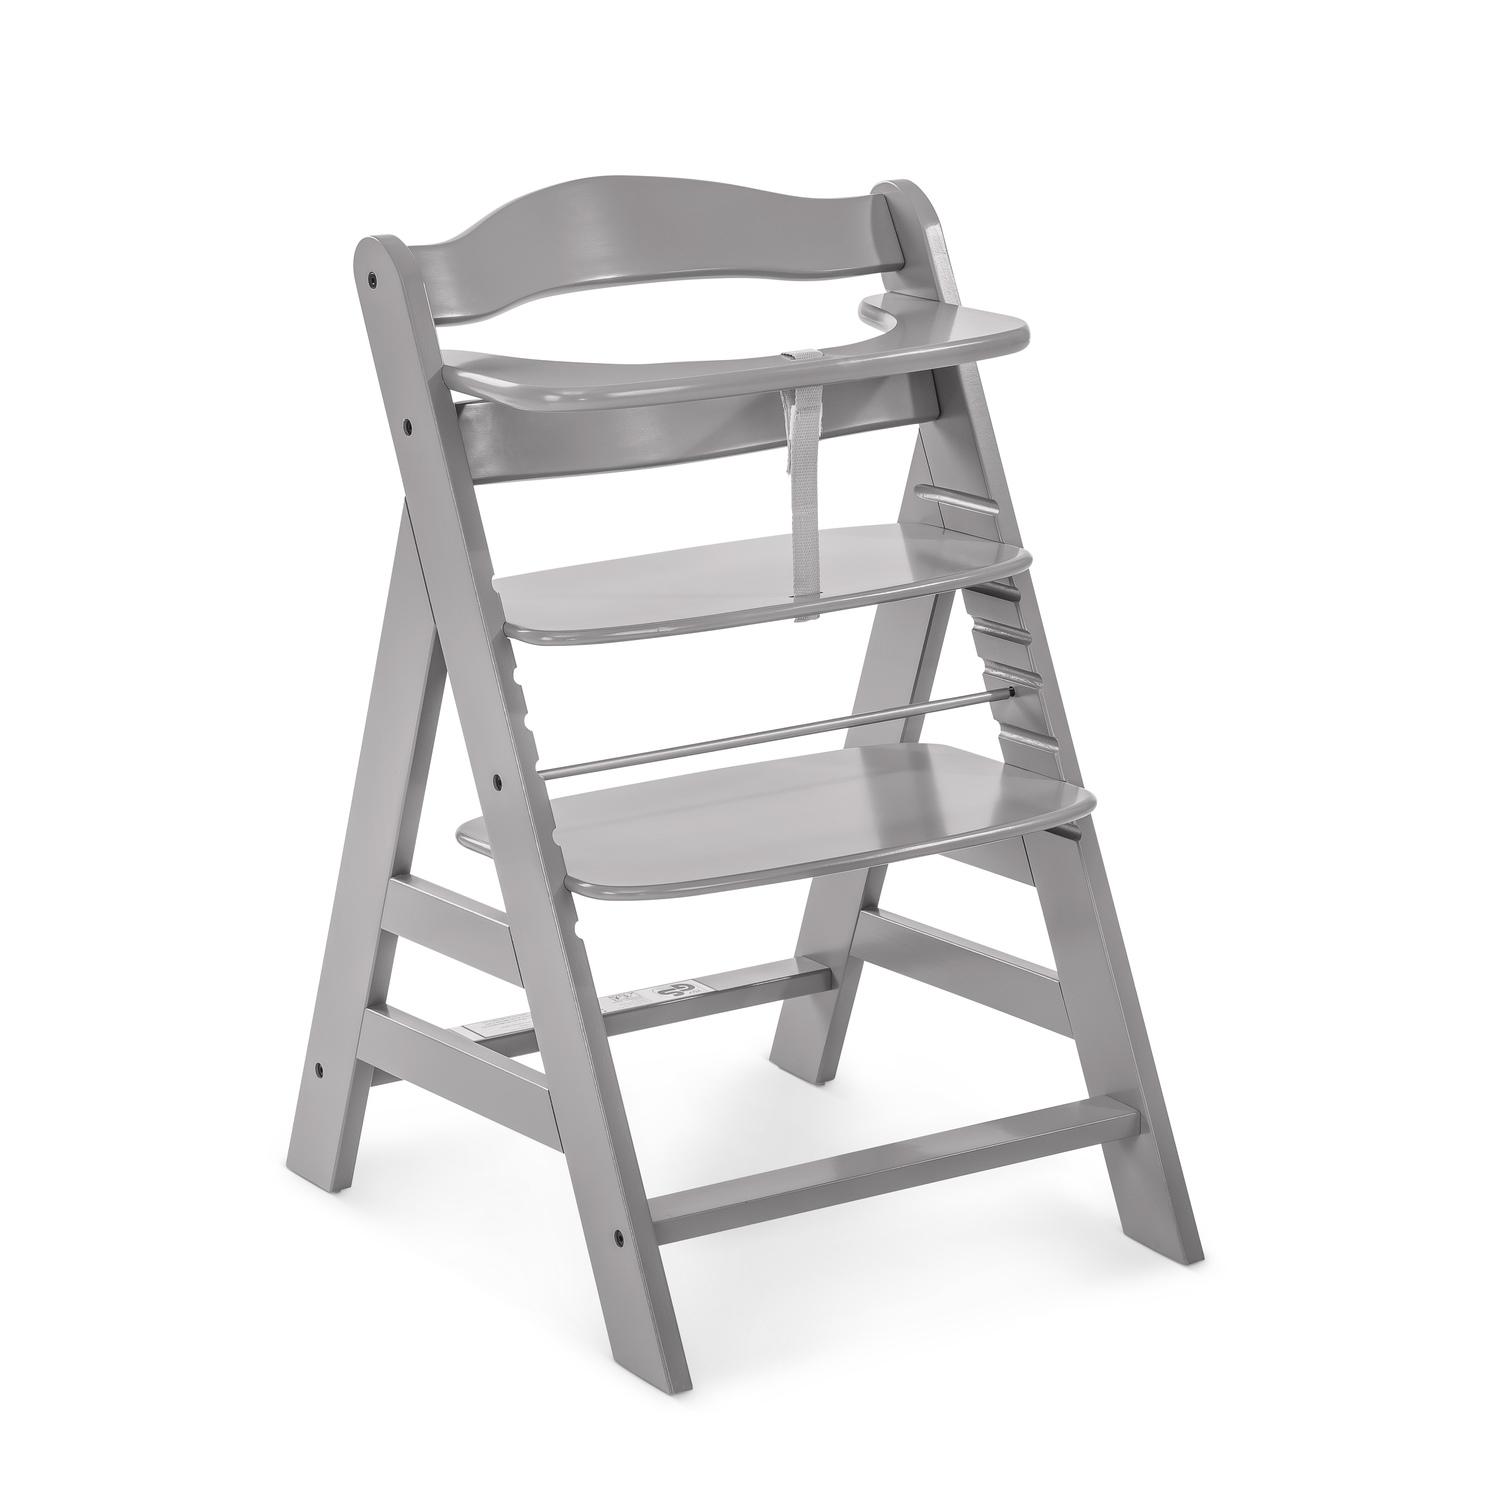 Jídelní dřevěná židlička Hauck Alpha plus, grey